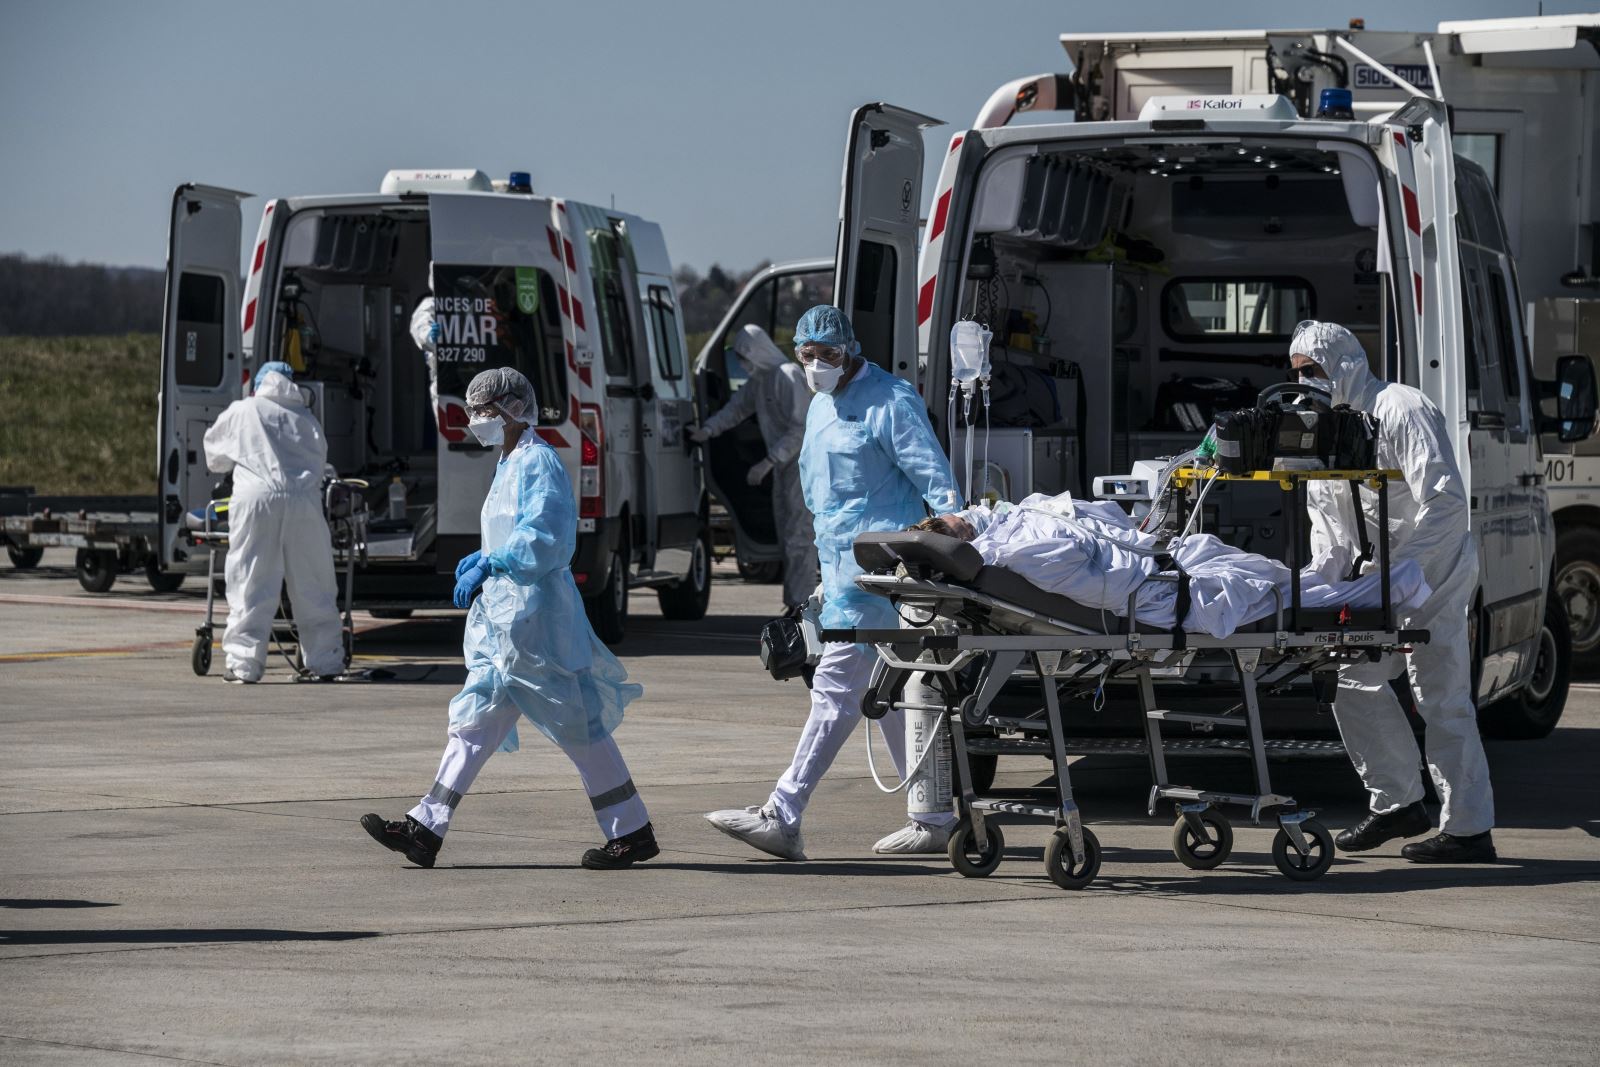 Nhân viên y tế chuyển bệnh nhân mắc COVID-19 tại sân bay Bale-Mulhouse, Pháp, ngày 31/3/2020